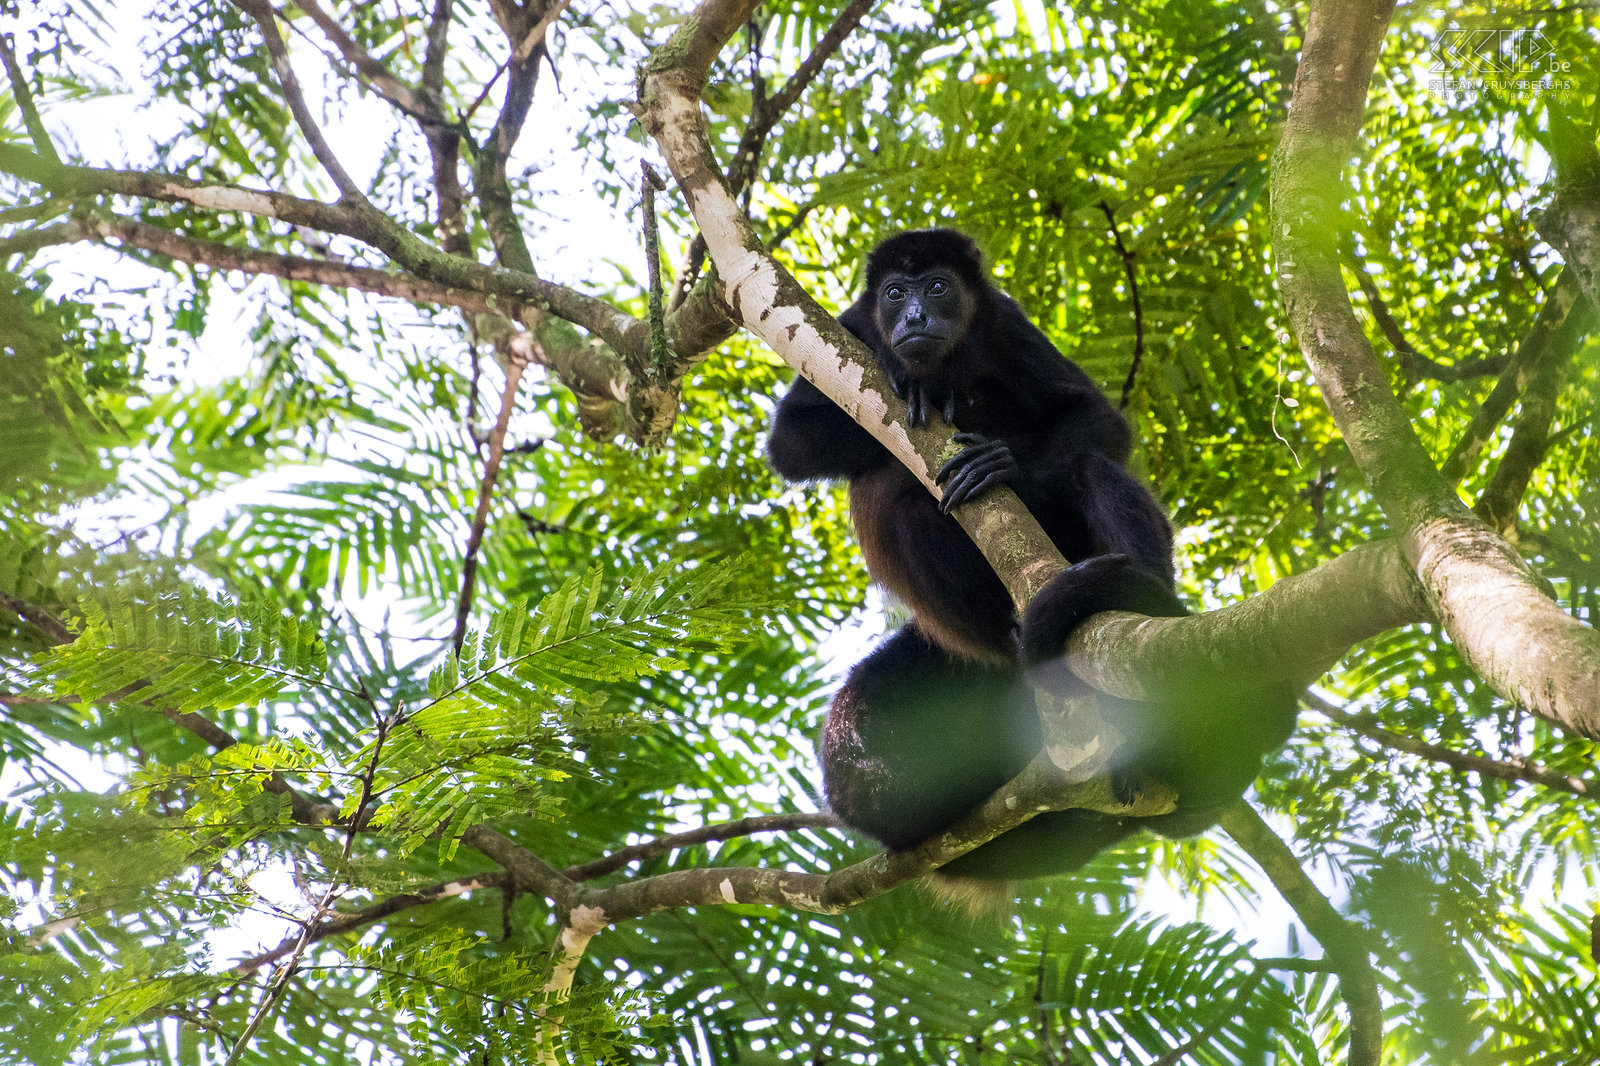 La Selva - Mantelbrulaap De mantelbrulaap (mantled howler monkey, alouatta palliata) is een aap uit de familie der brulapen, ook bekend als breedneusapen. Het is  een van de grootste apen in Midden-Amerika en mannetjes kunnen tot 9.8kg wegen. Ze voelen zich het meest thuis in bosrijke gebieden zoals mangroven en regenwouden. Deze apen besteden het grootste deel van hun tijd aan rusten en slapen. Mannetjes hebben een groter tongbeen naast de stembanden en daardoor wordt hun geroep versterkt, zodat ze andere mannetjes kunnen vinden zonder veel energie te verbruiken.<br />
 Stefan Cruysberghs